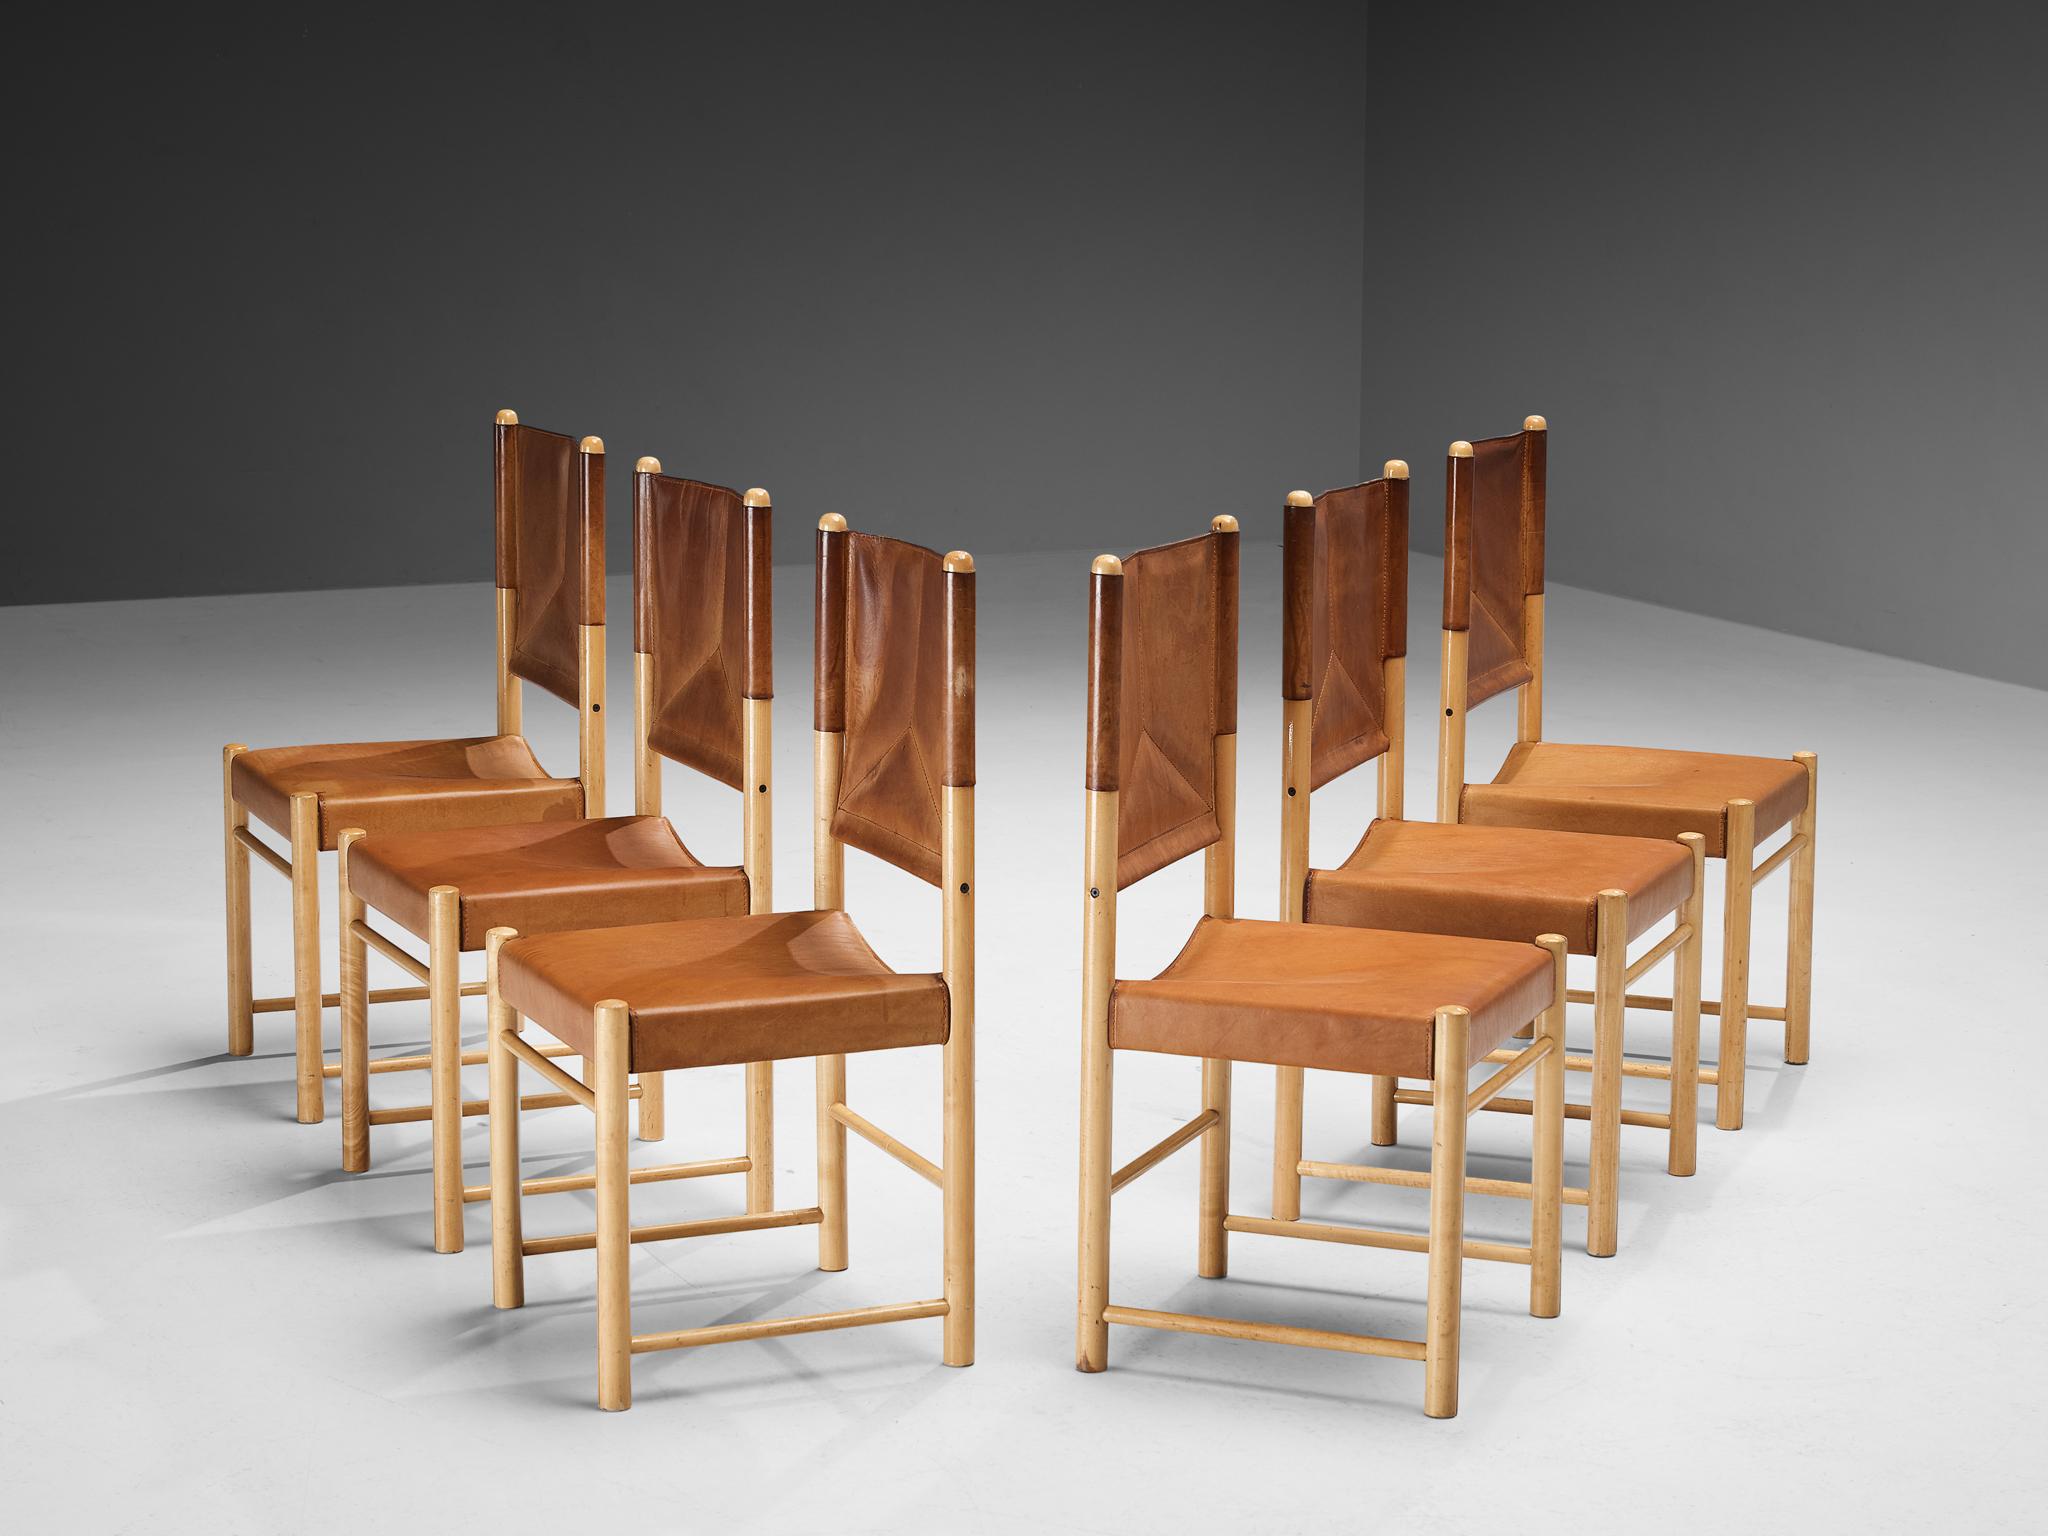 Satz von sechs Esszimmerstühlen, Buche, Leder, Italien, 1970er Jahre.

Ein zartes Set von Stühlen, die gut proportioniert sind und den Essbereich auf eine kraftvolle und starke Weise aufwerten. Der Holzrahmen besteht aus zylindrischen Balken, an